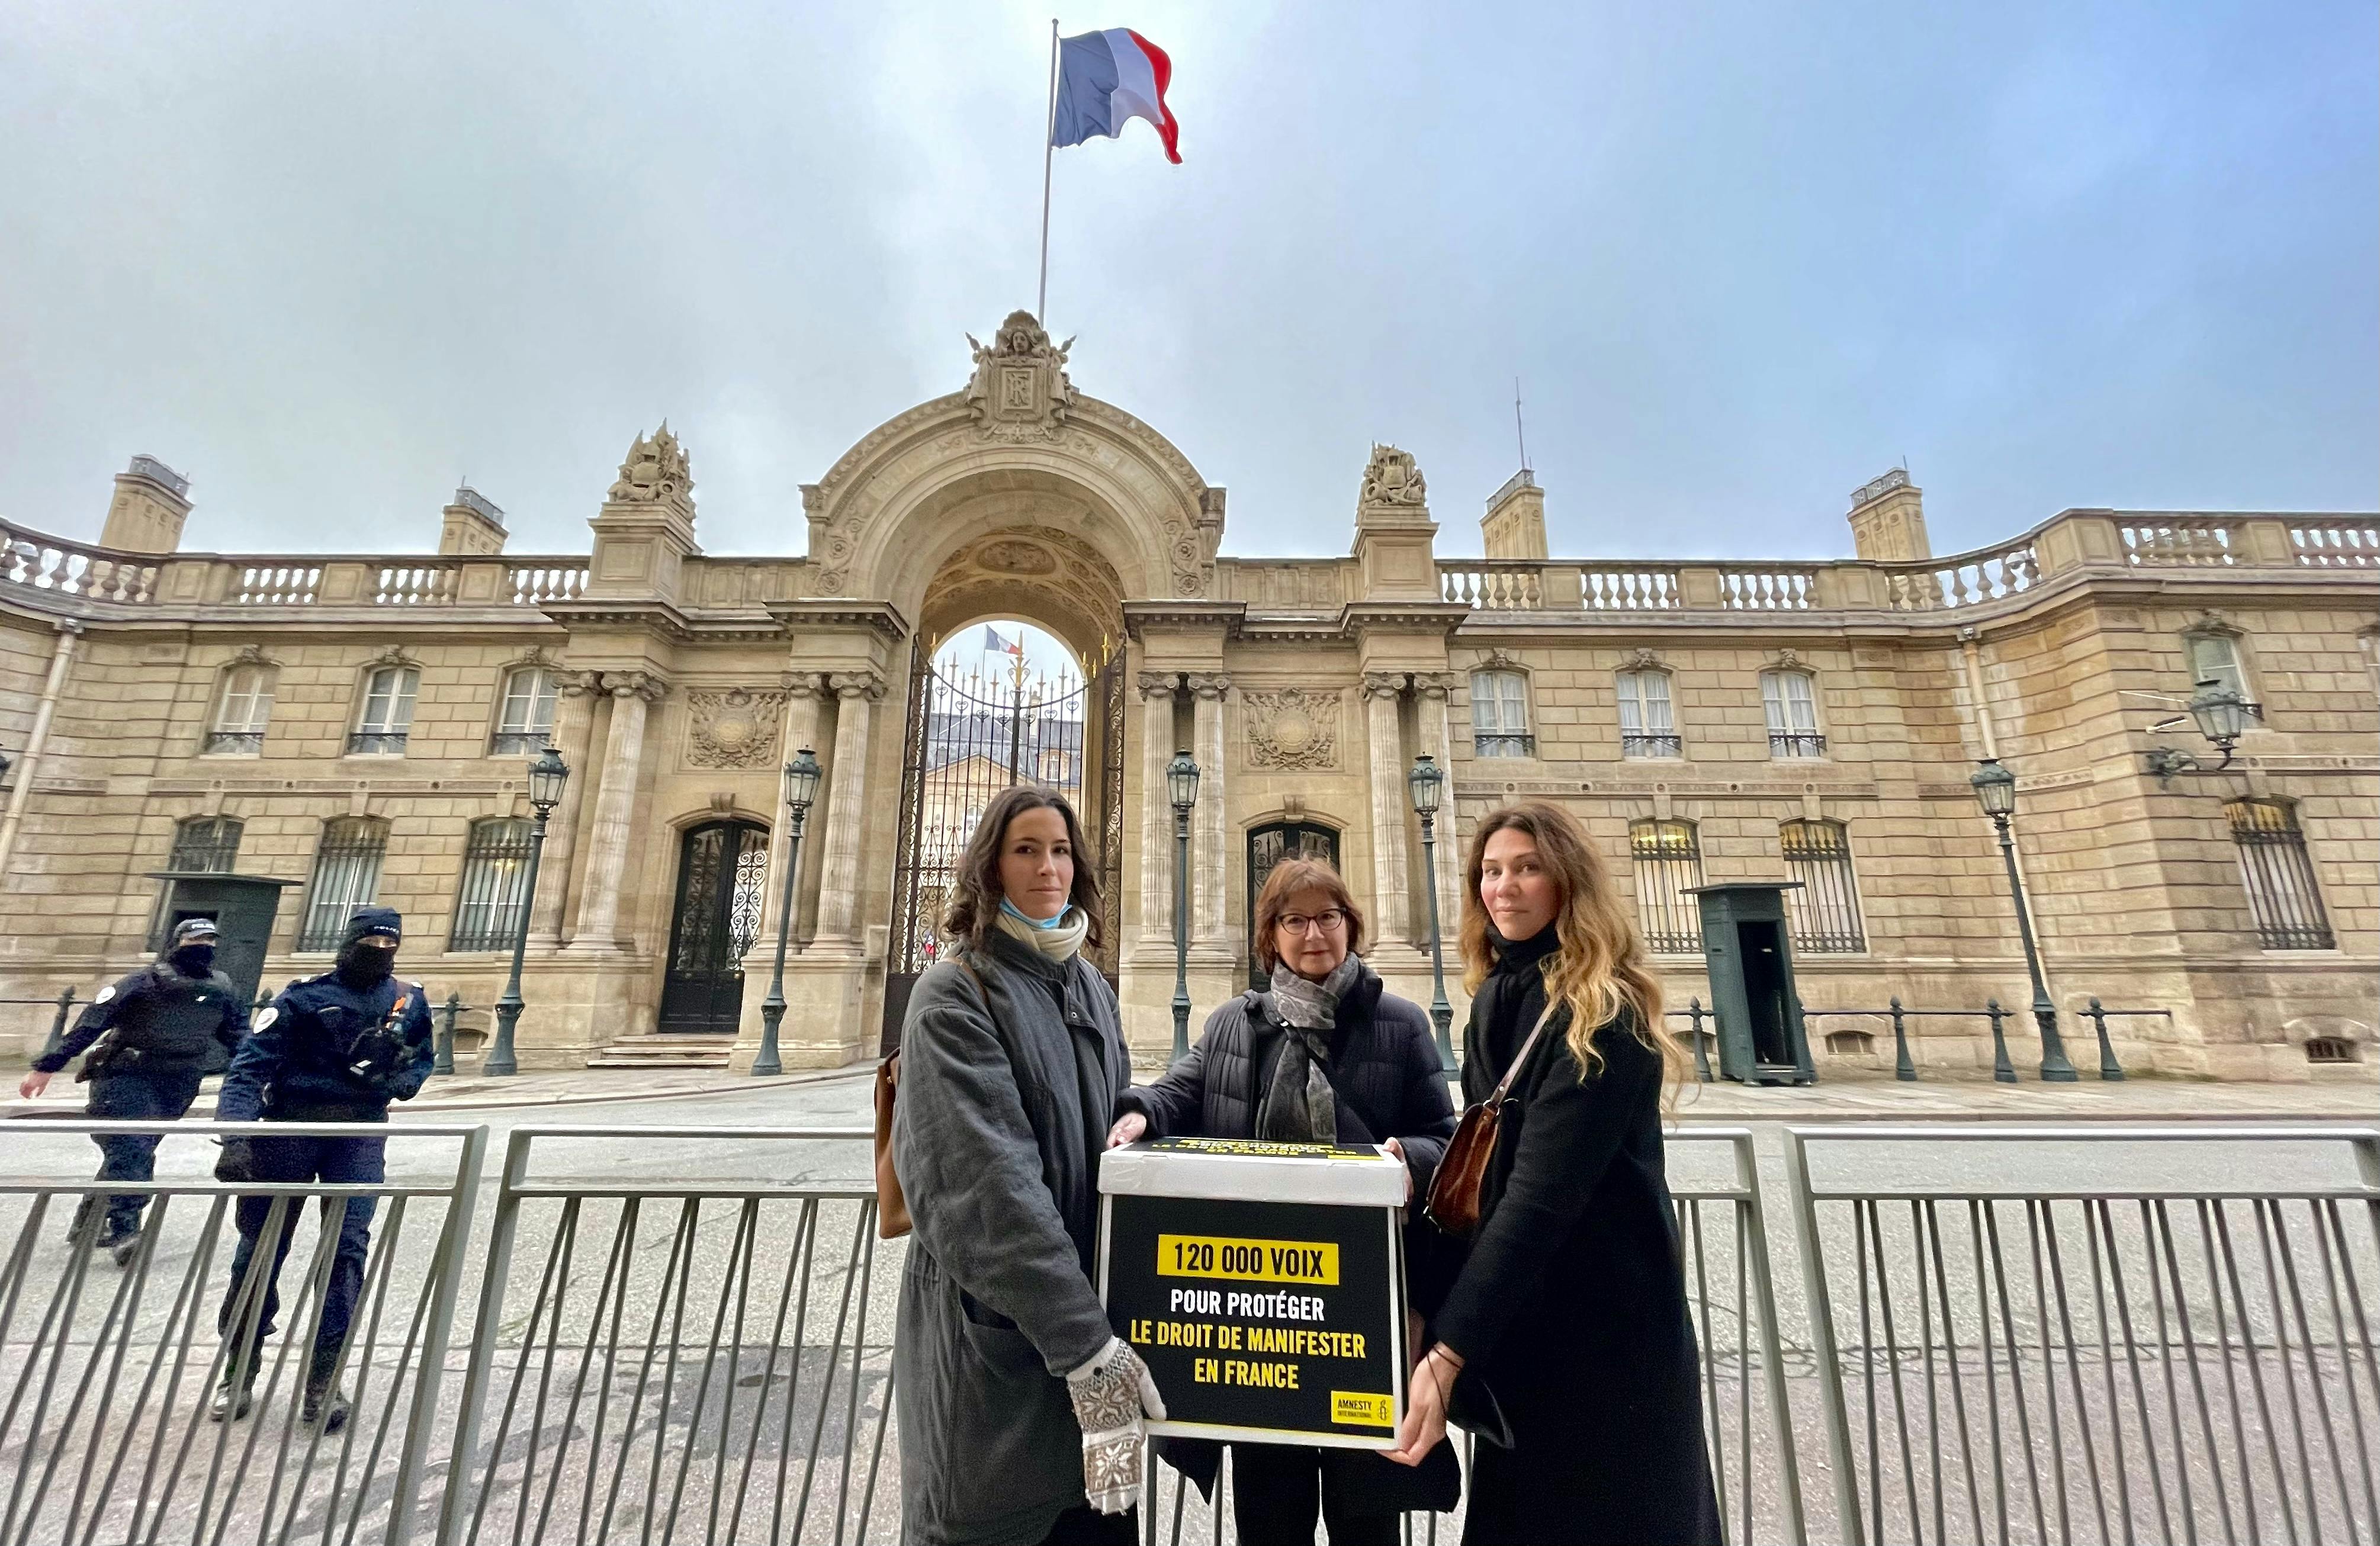 Cécile Coudriou la présidente d'Amnesty International France remet à l’Élysée une pétition demandant la protection du droit de manifester en France, le 7 décembre 2021 / © Amnesty International